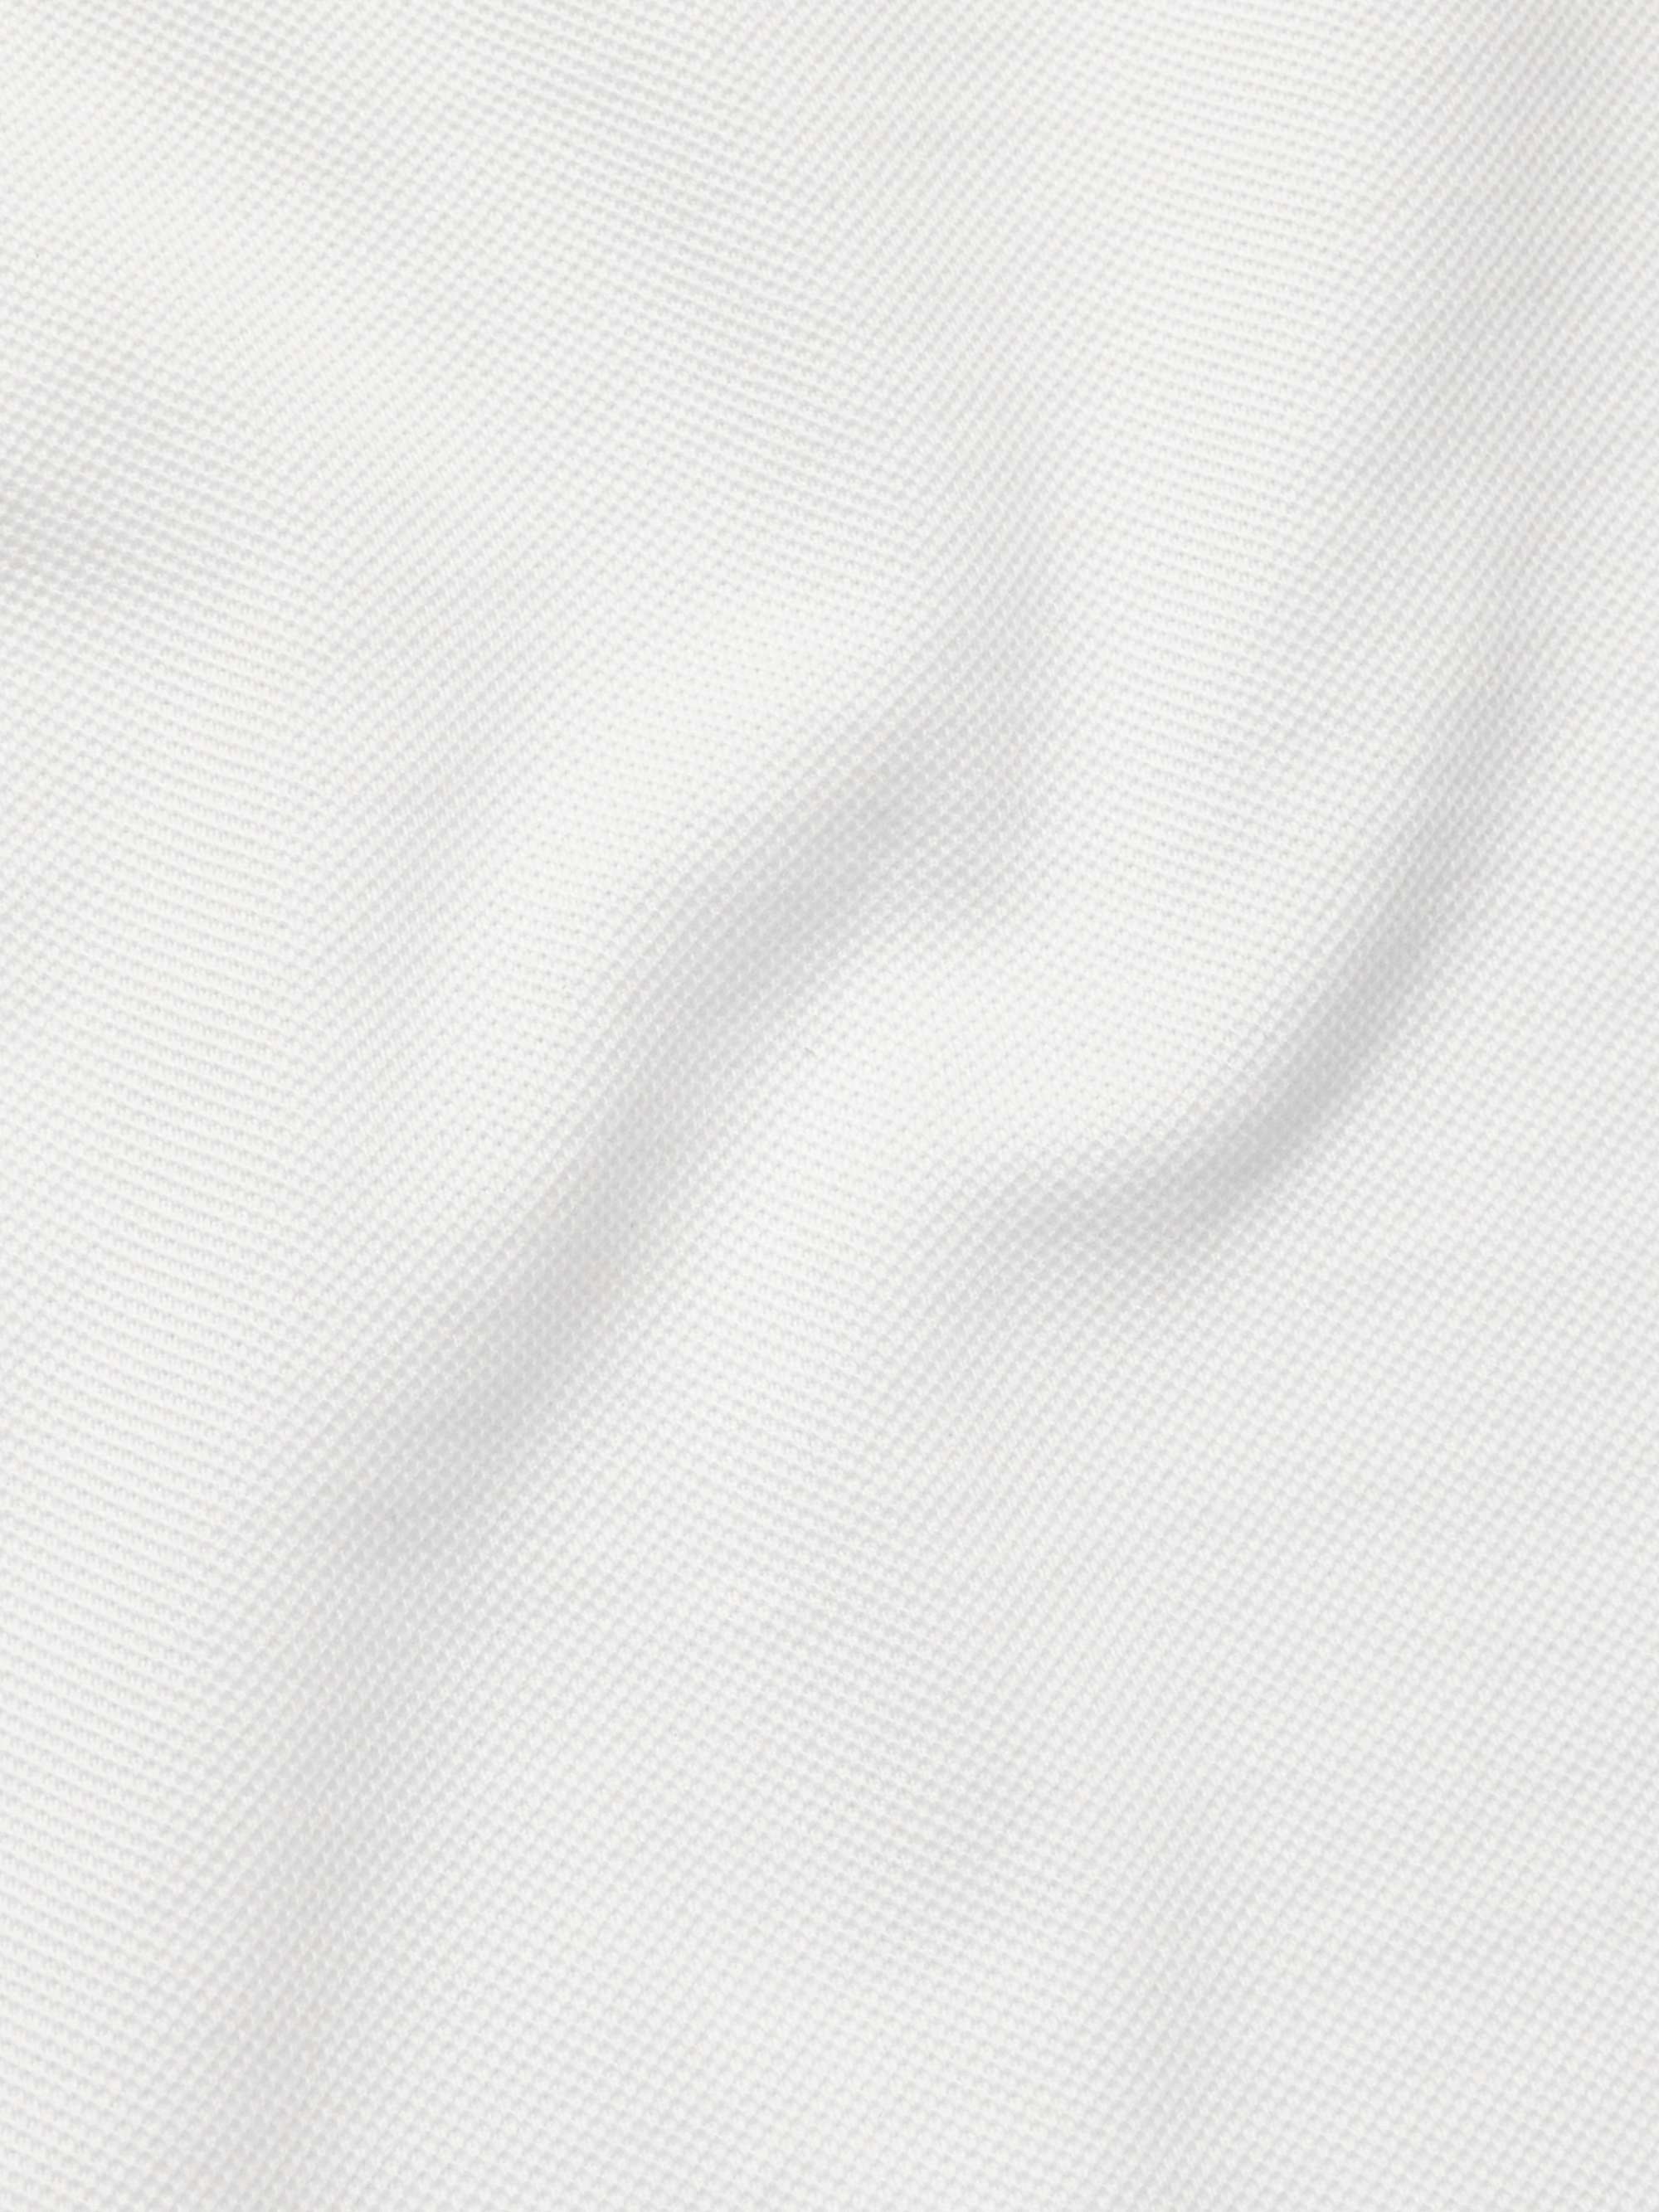 A.P.C. Esteban Logo-Embroidered Cotton-Piqué Polo Shirt